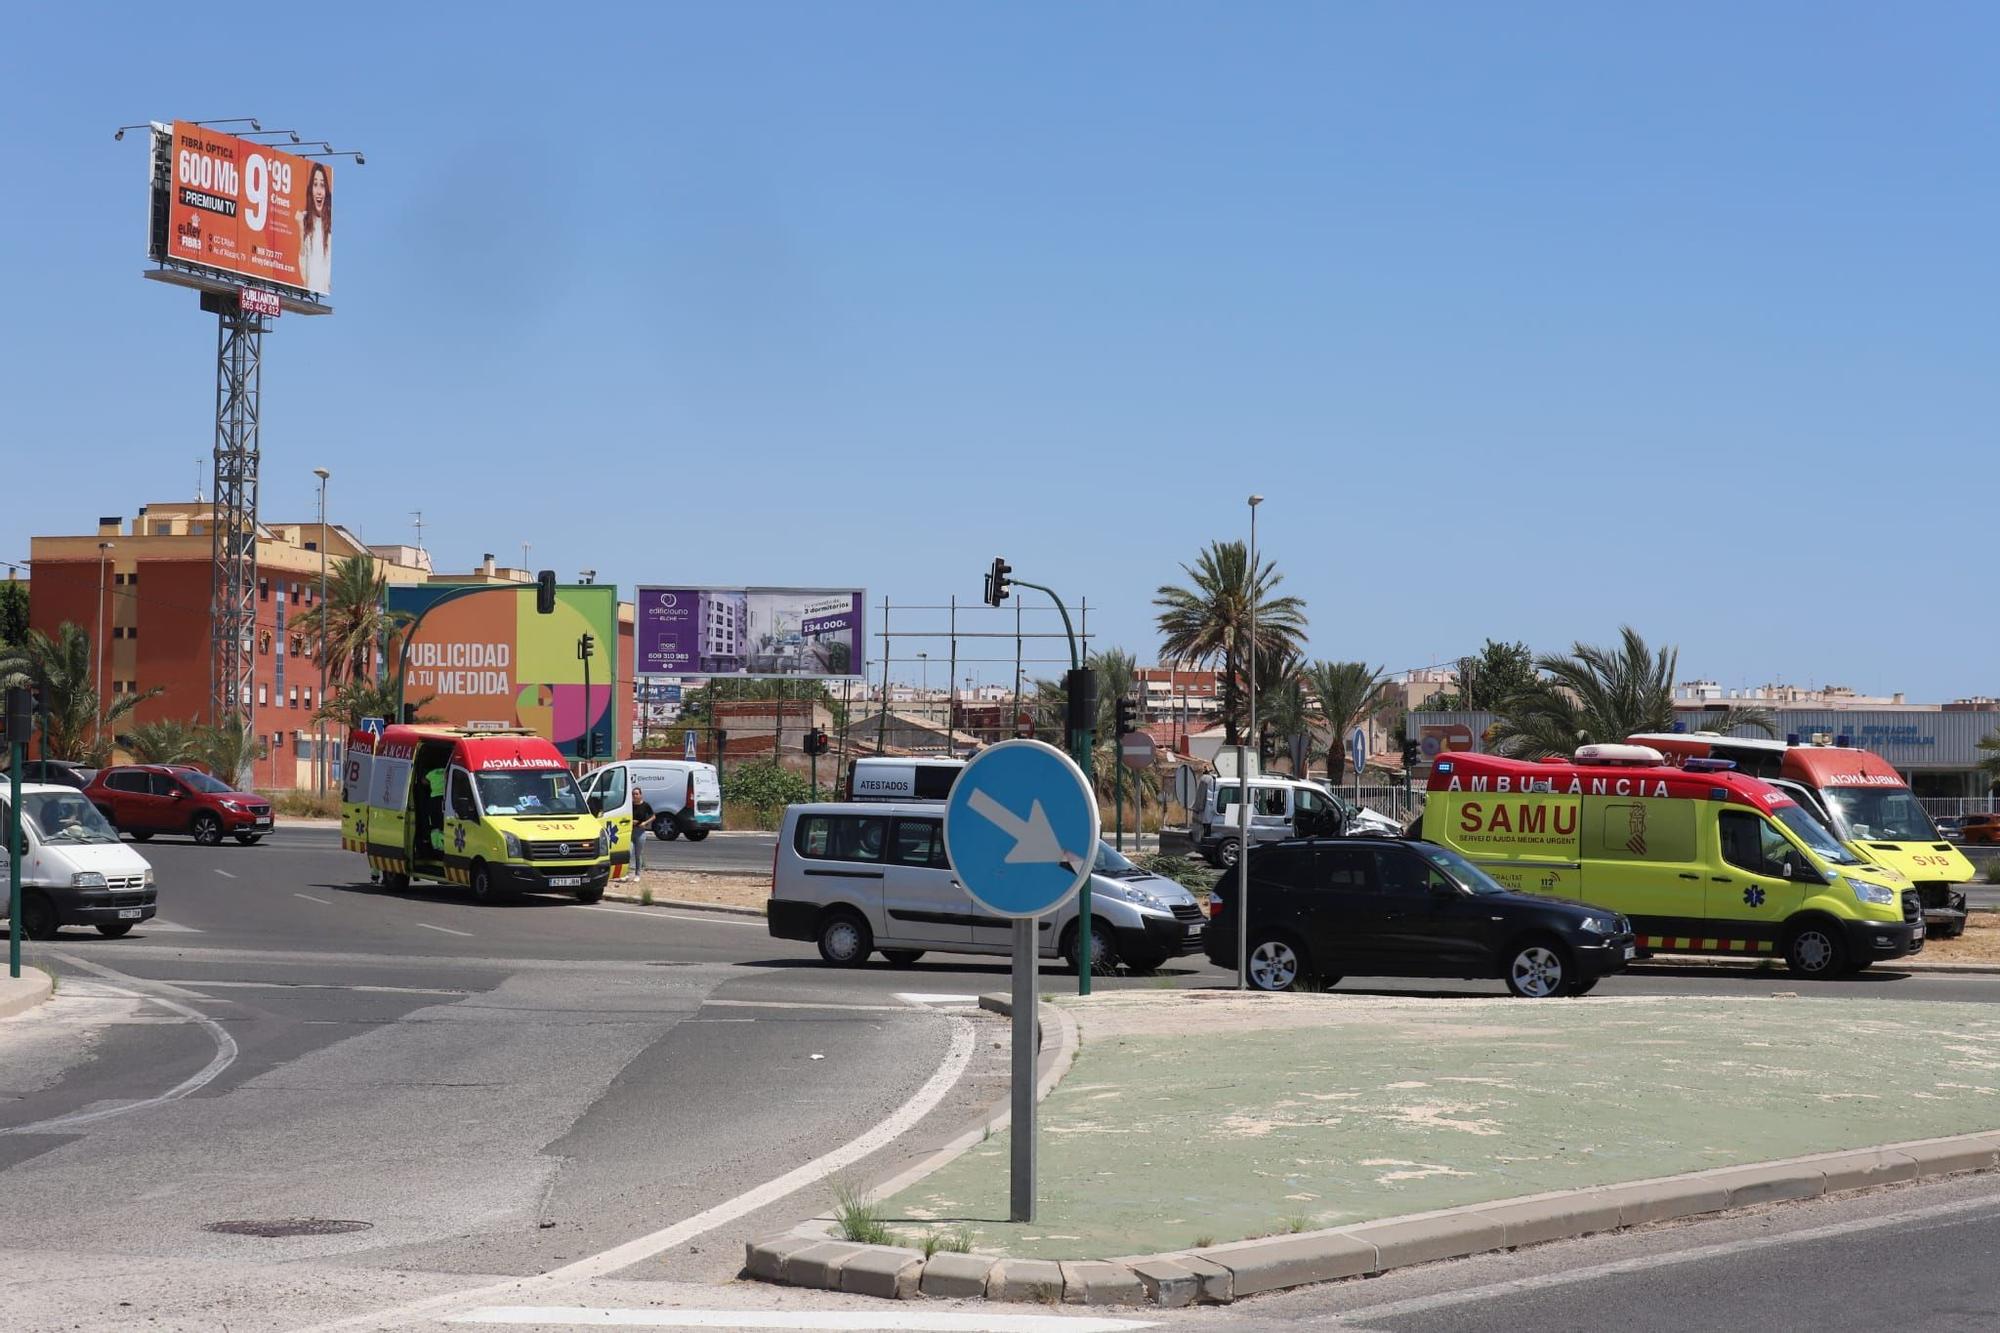 Fuerte accidente entre una ambulancia y una furgoneta en Elche